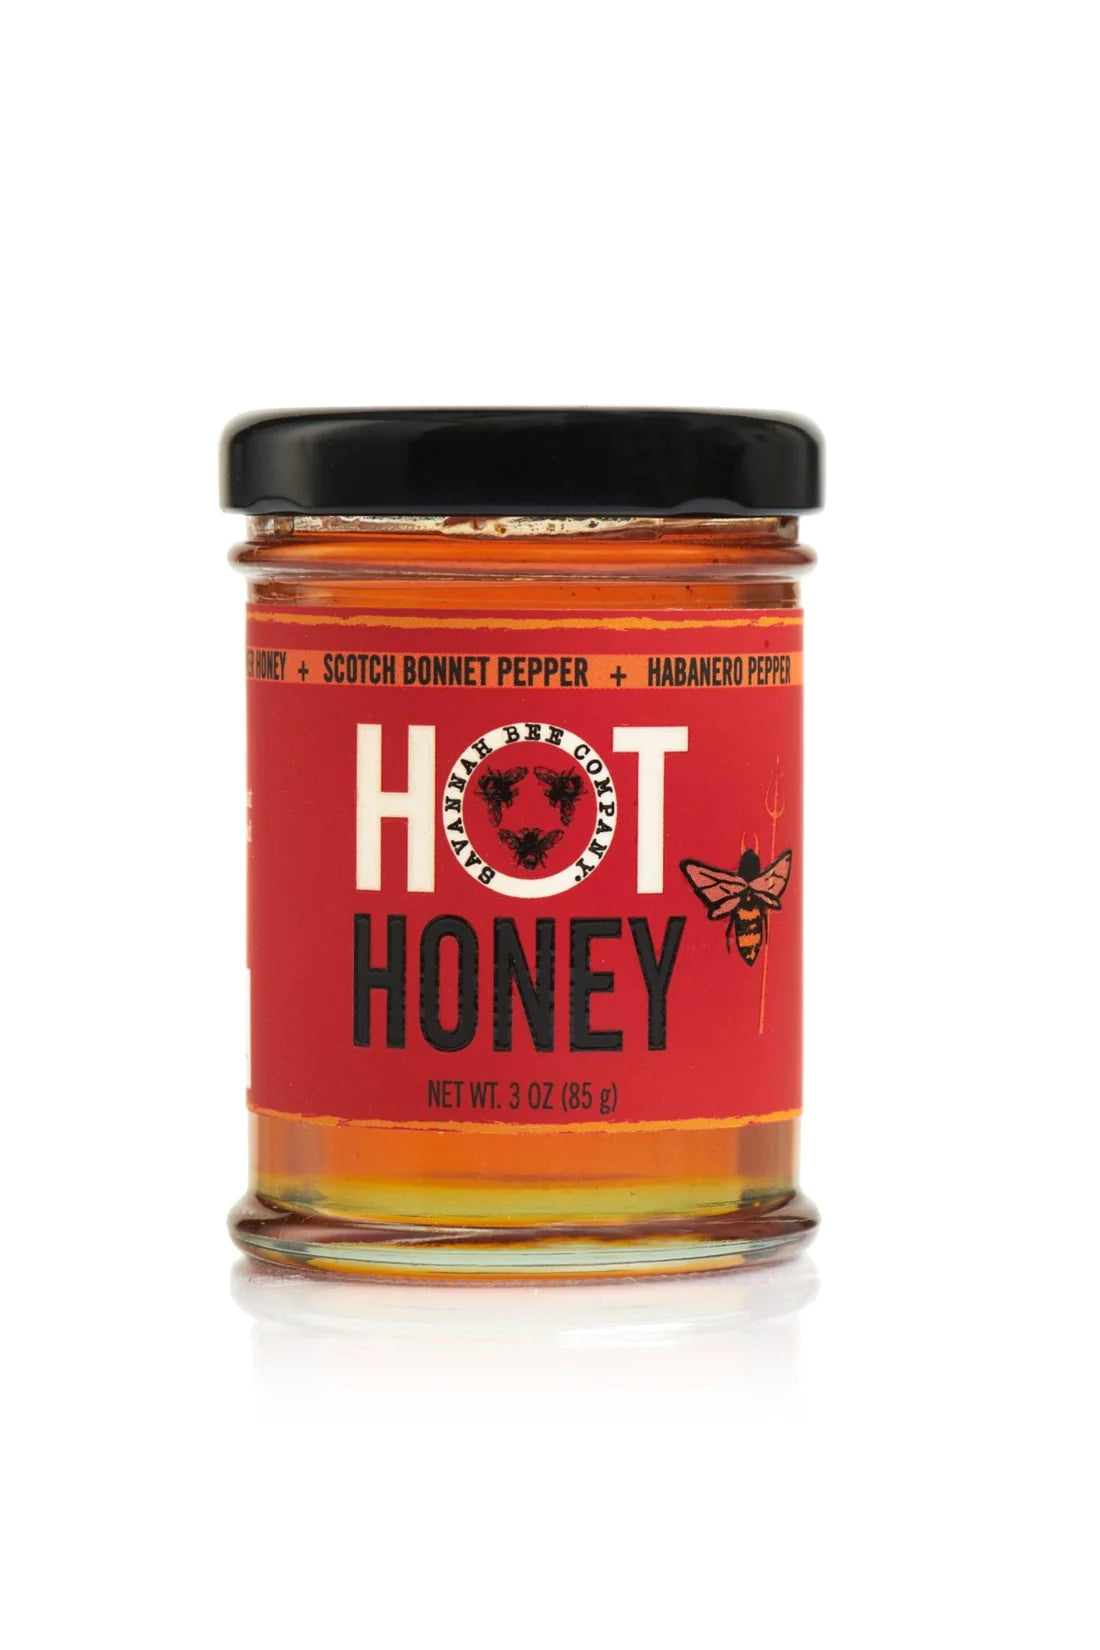 Savannah Bee Company Honey